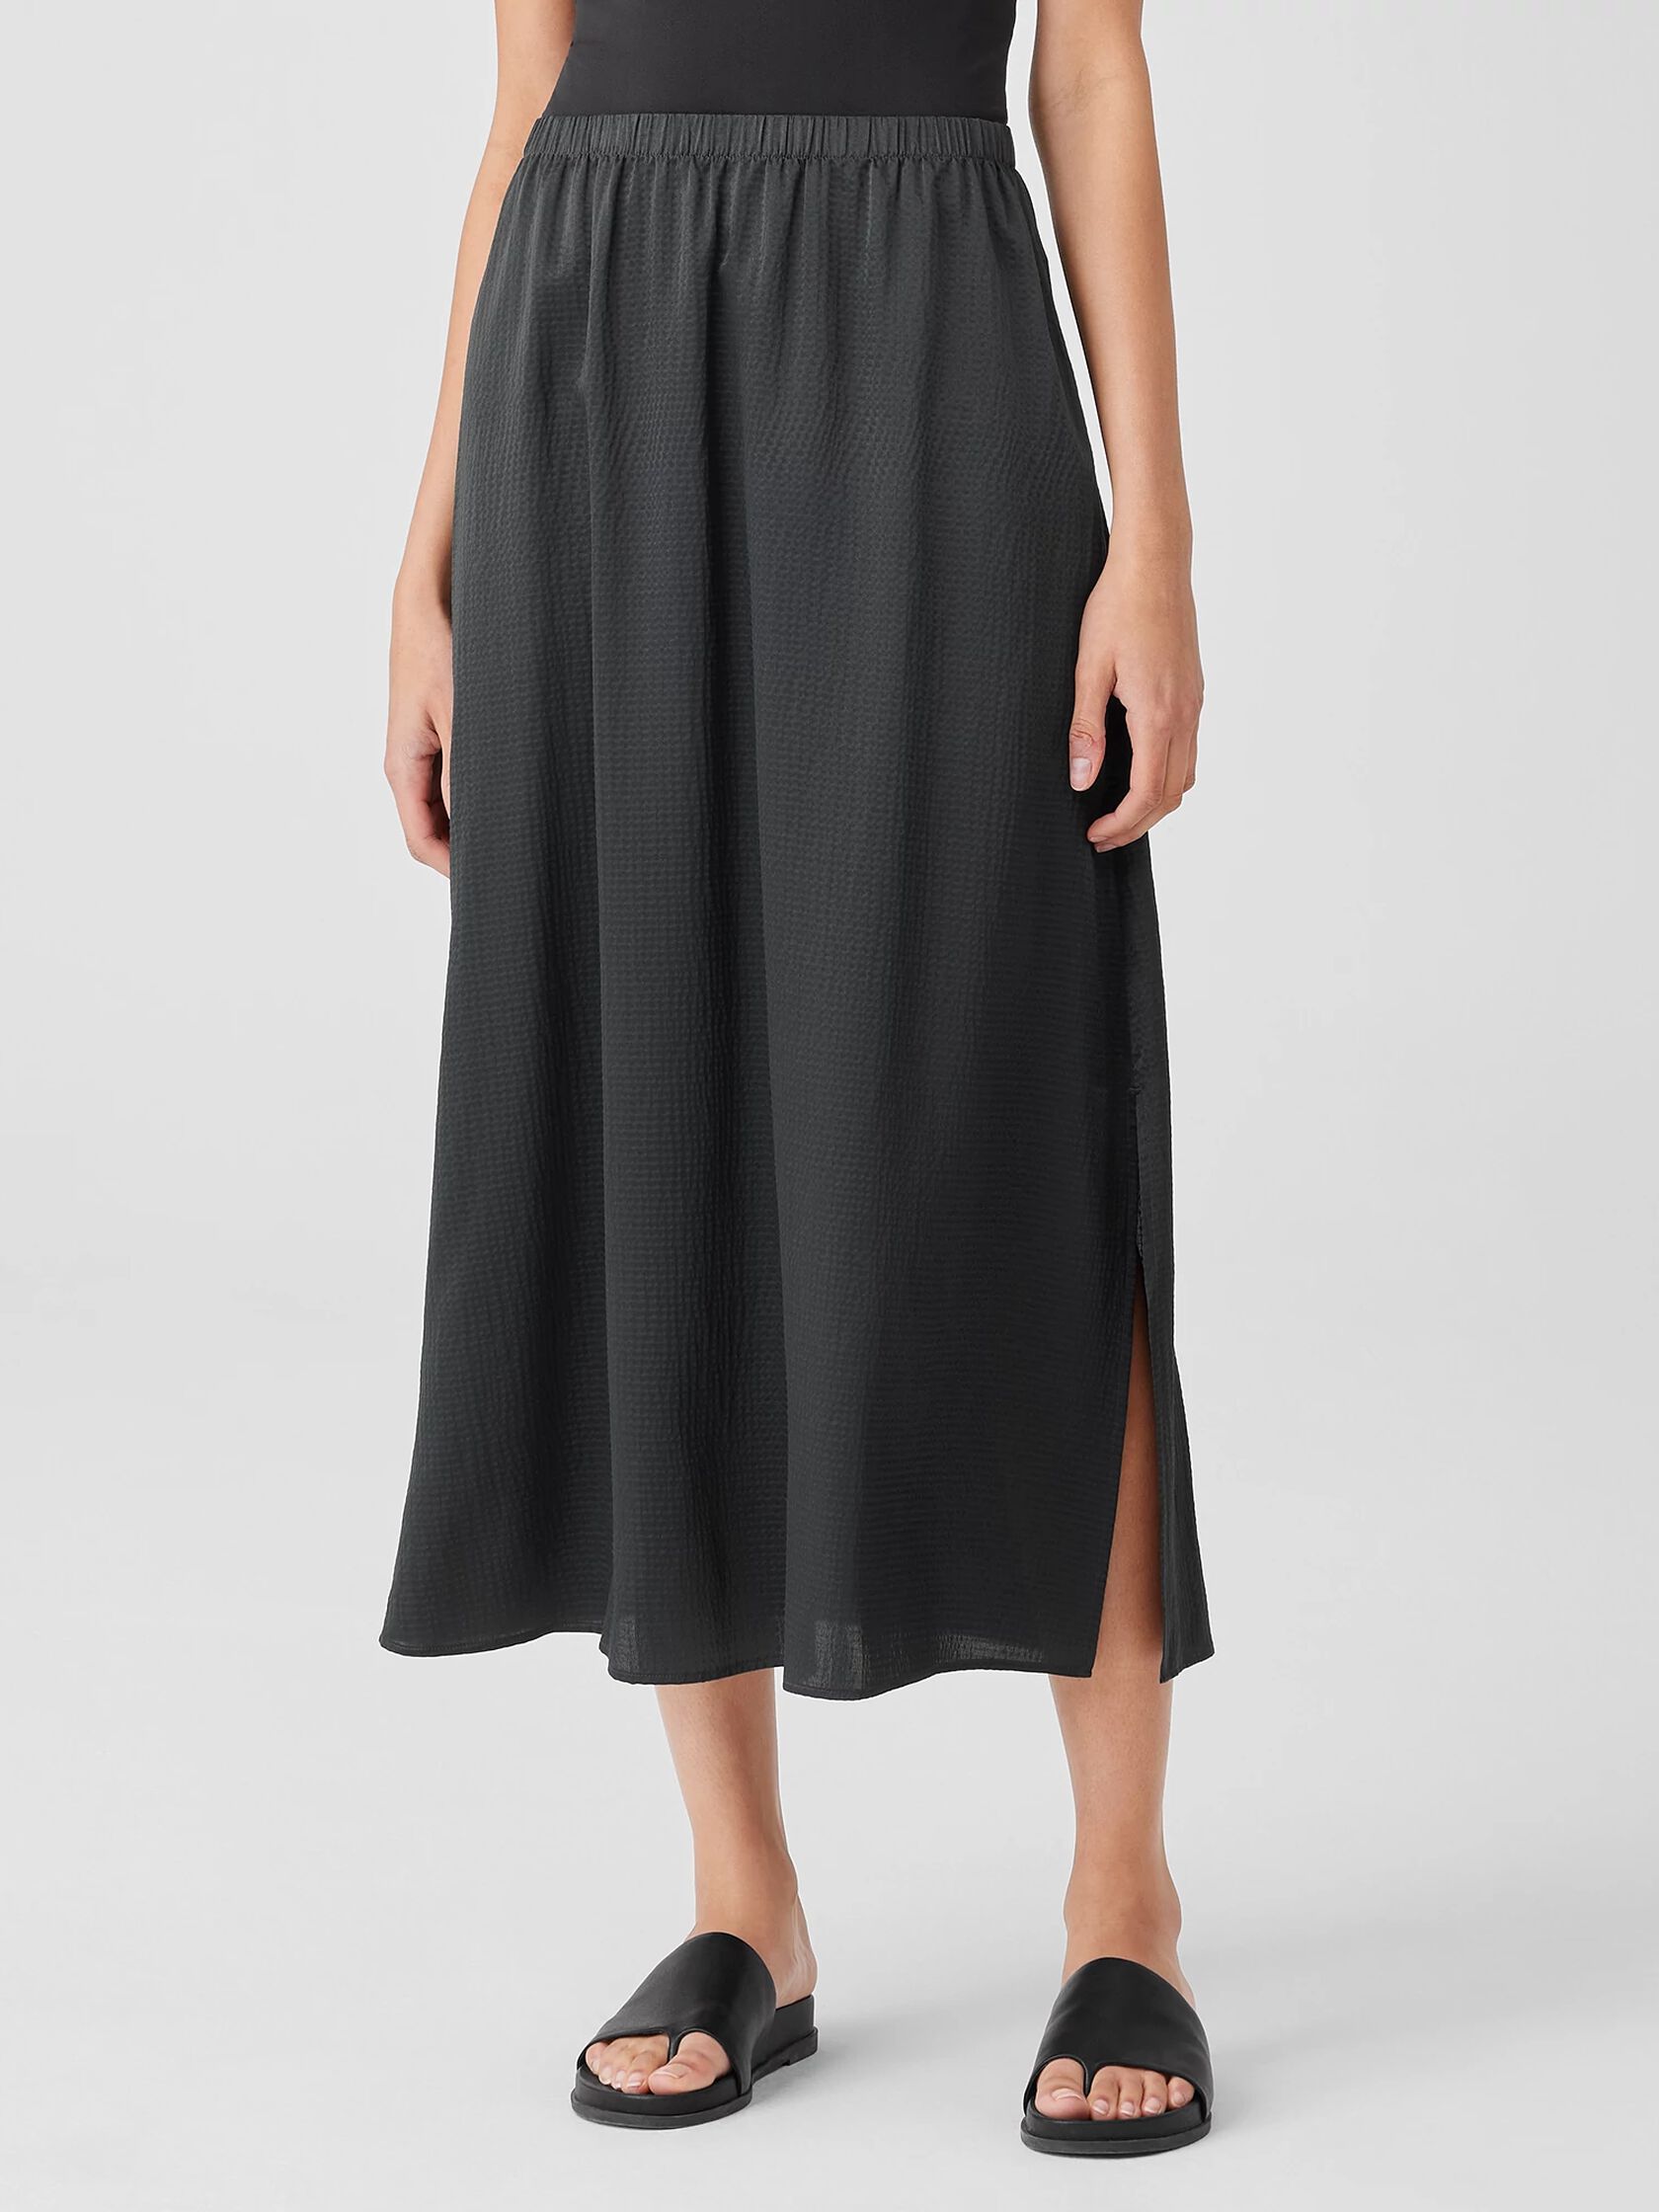 Hammered Silk Cotton A-Line Skirt